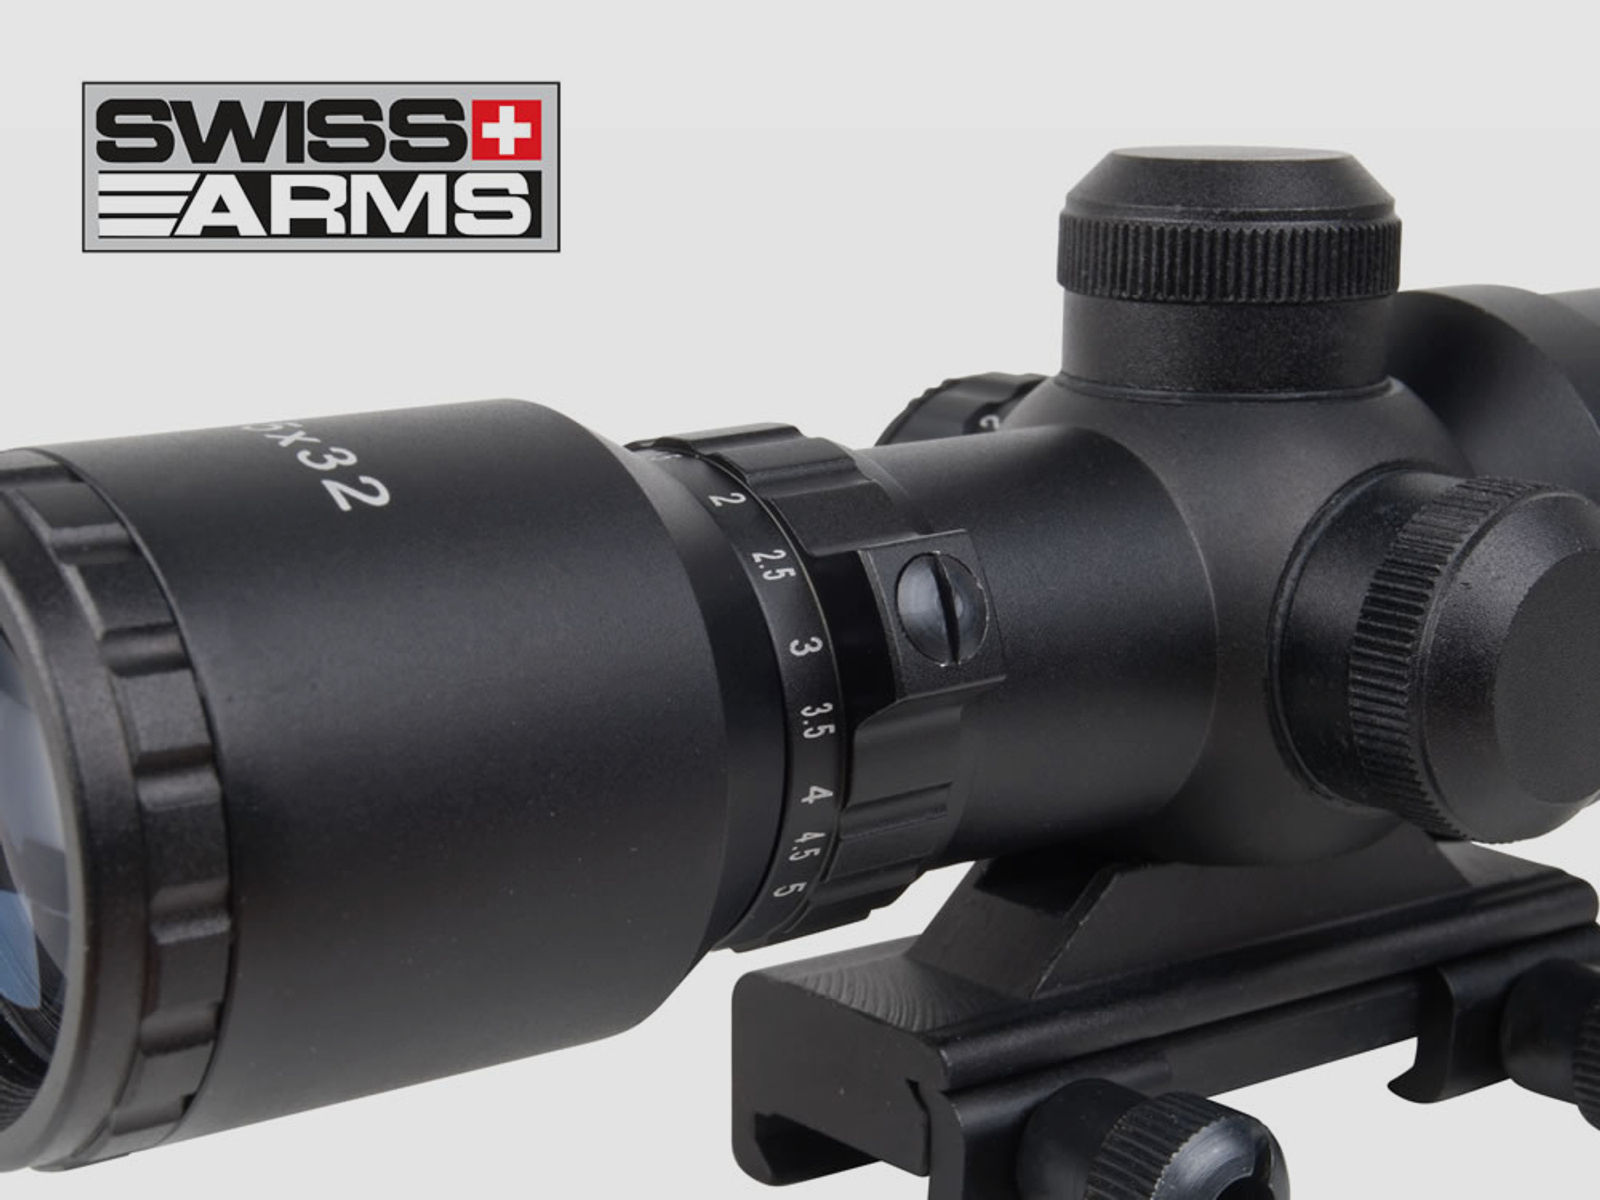 SWISS ARMS Zielfernrohr 1,5-5x32 IR, Mil-Dot-Absehen beleuchtet, inkl. Weavermontage